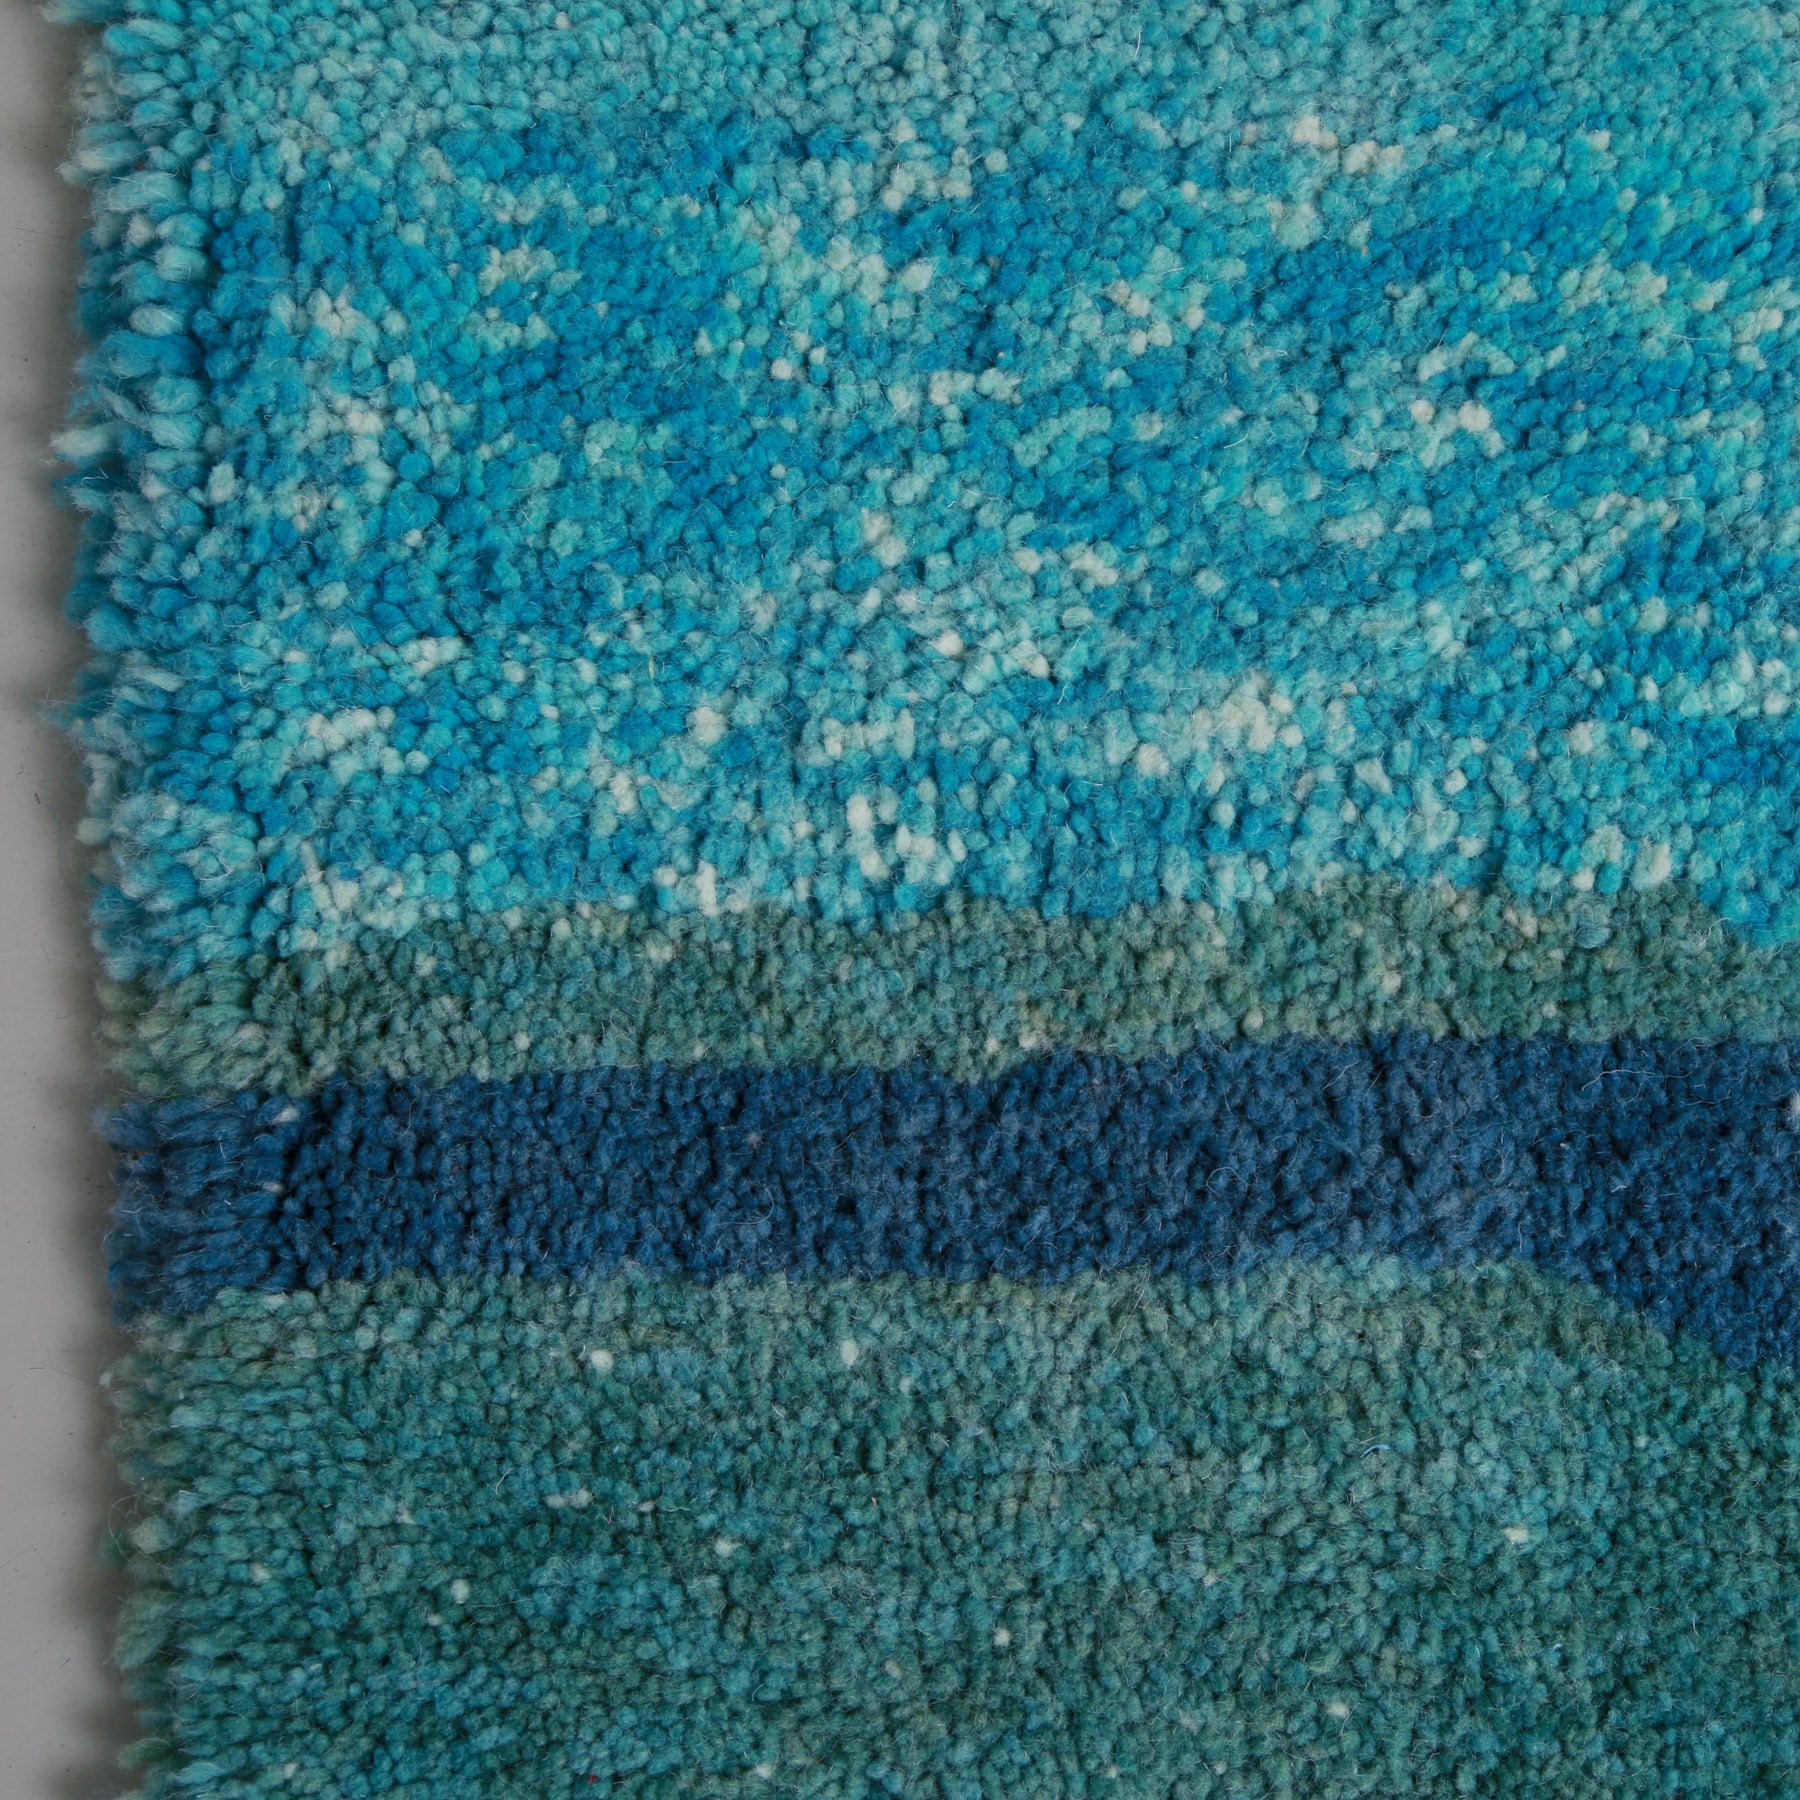 dettaglio della lana dalle sfumature di azzurro e blu di un tappeto marocchino beni ourain realizzato a mano